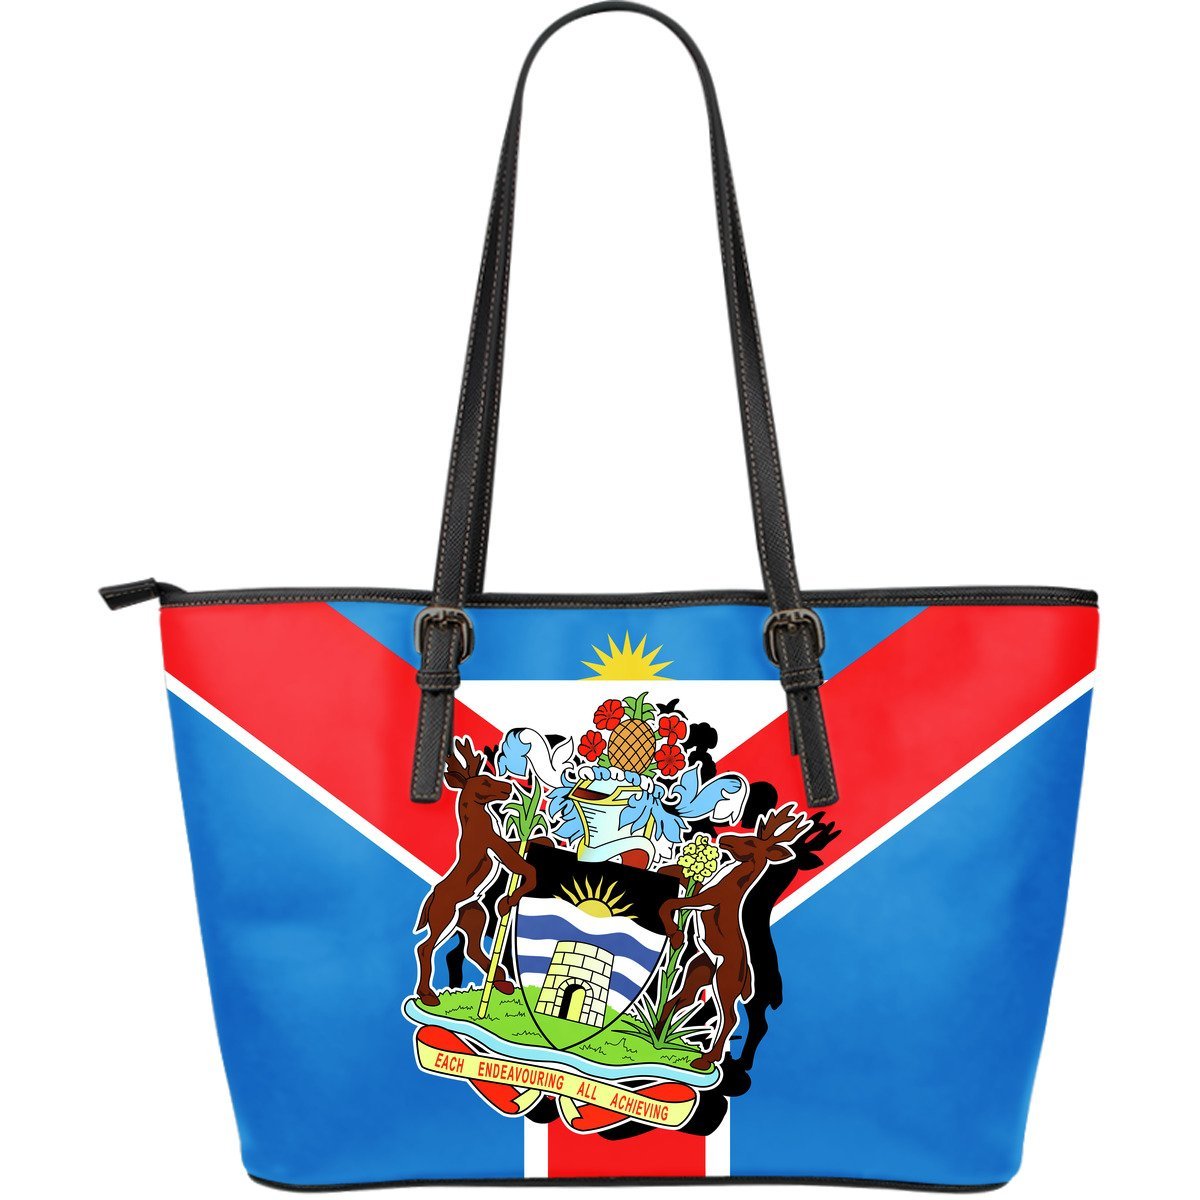 antigua-and-barbuda-bag-tote-rising